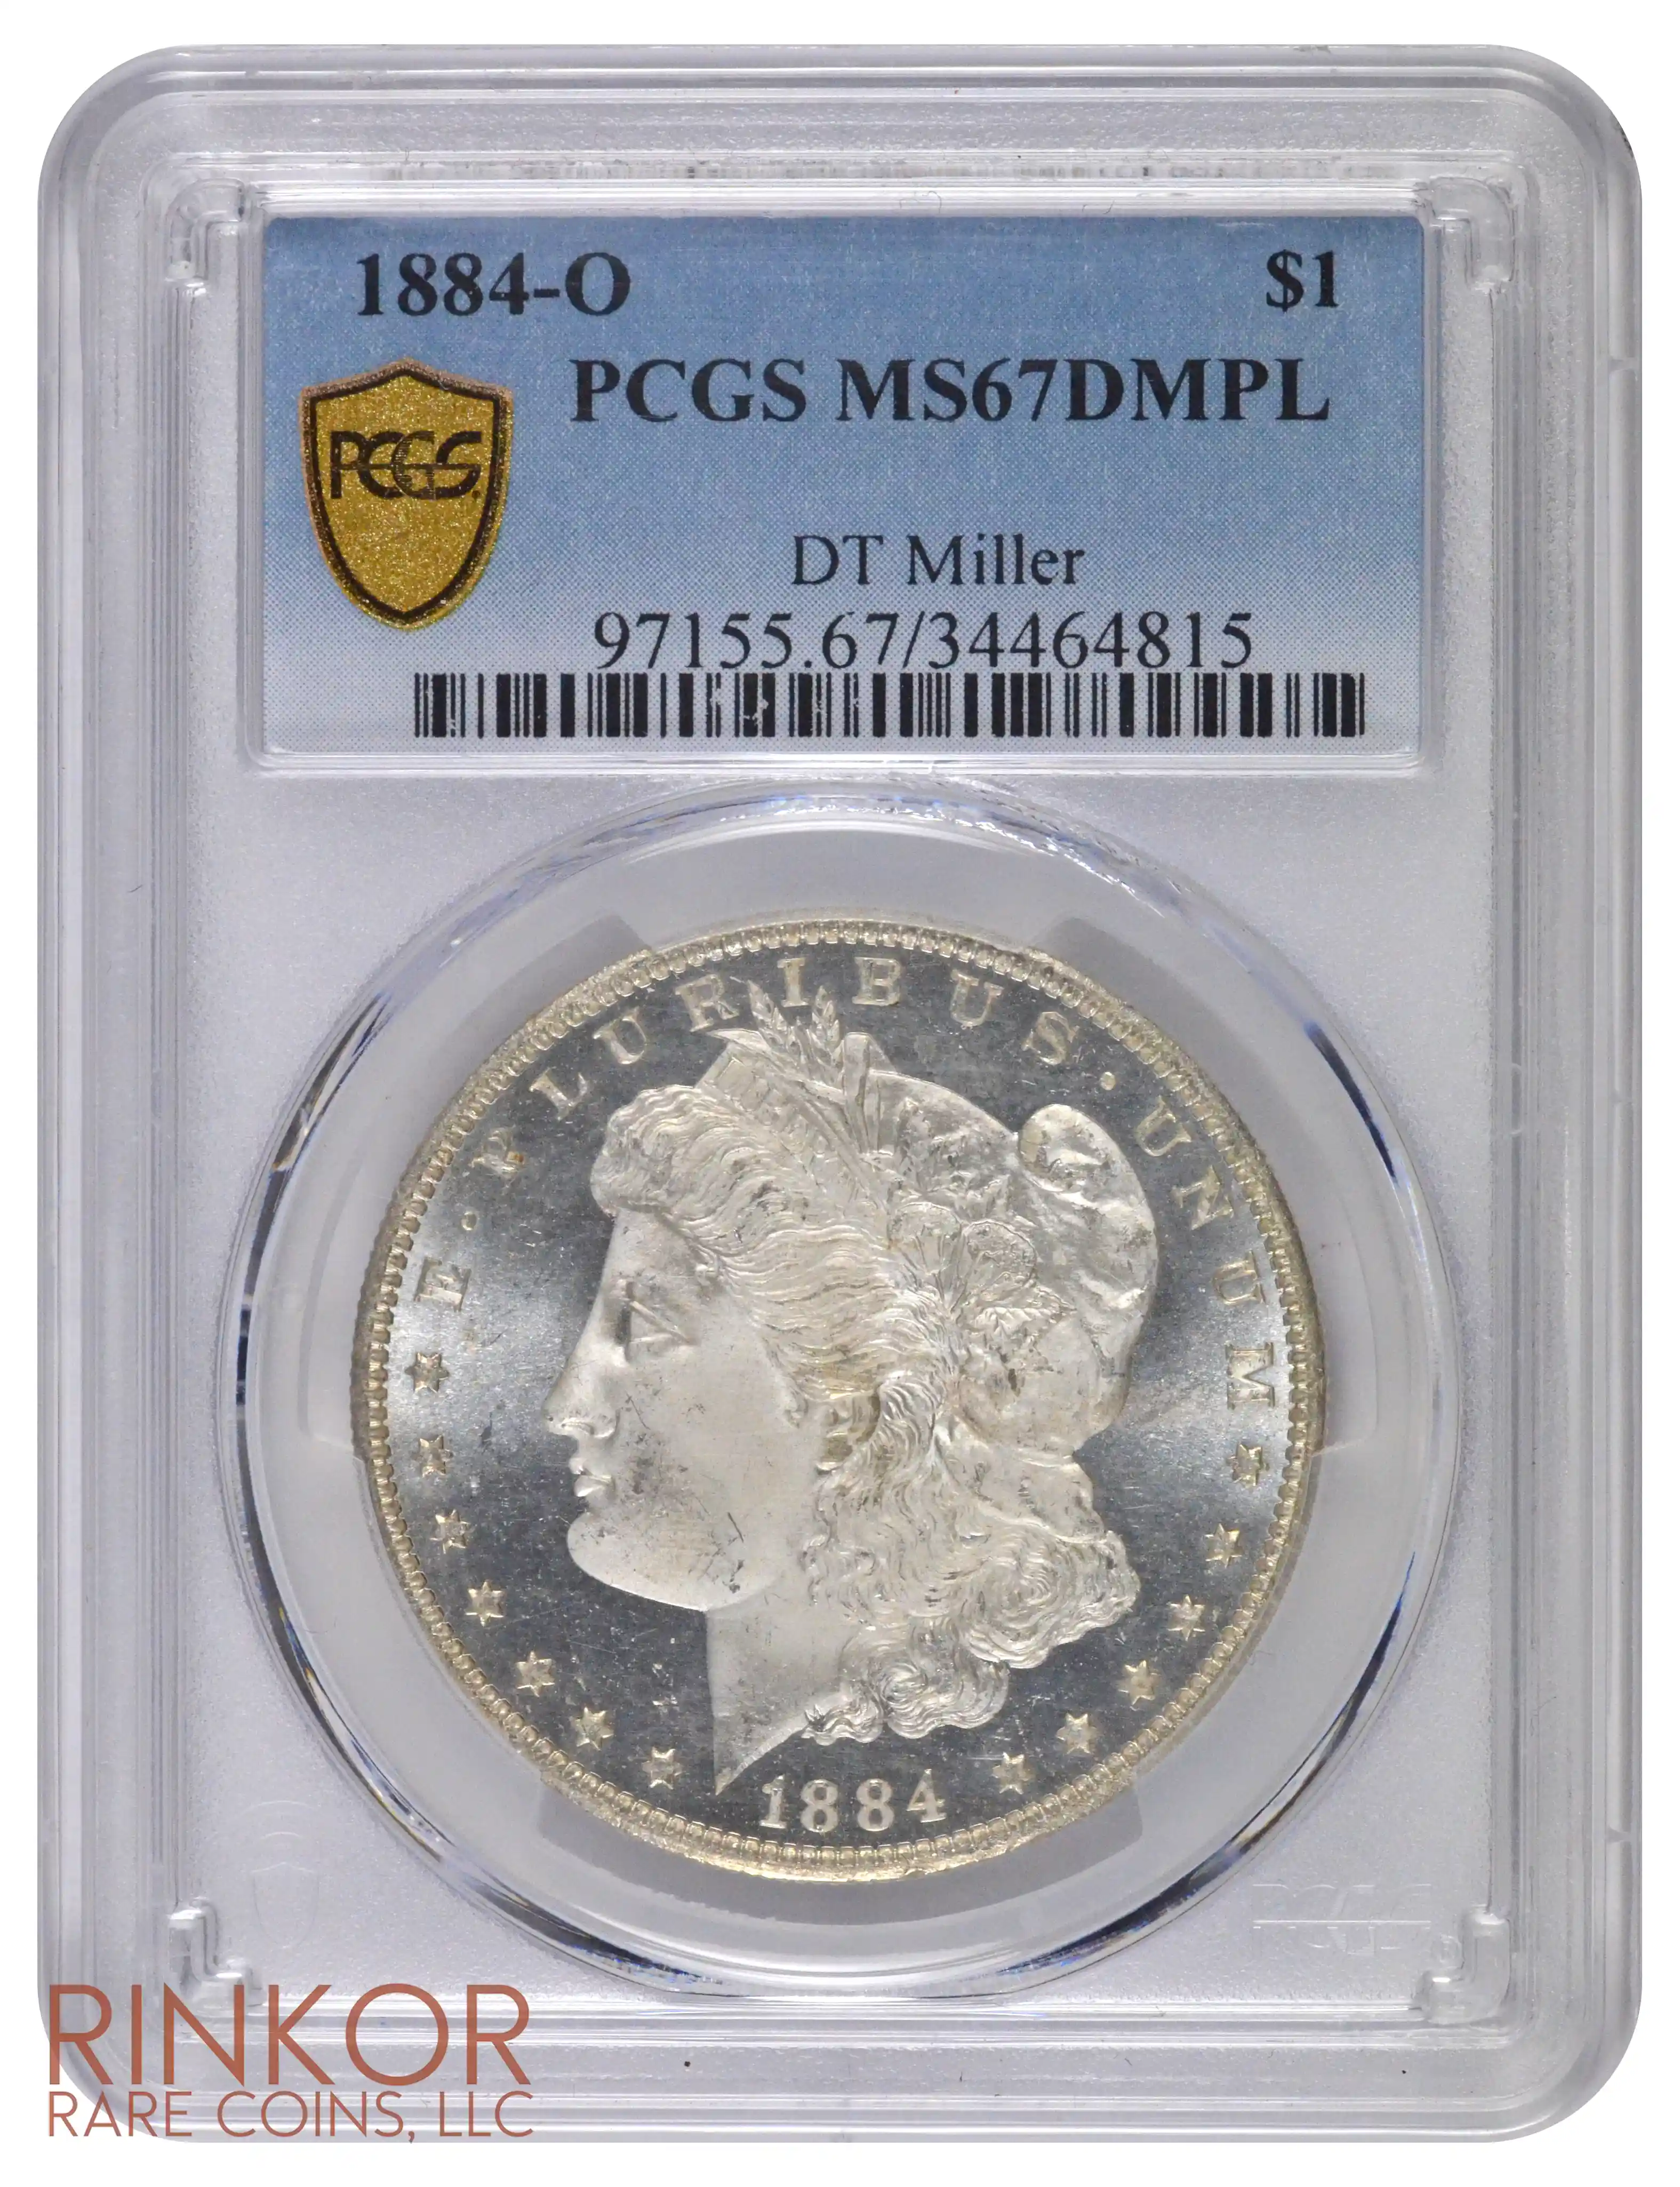 1884-O $1 PCGS MS 67 DMPL 